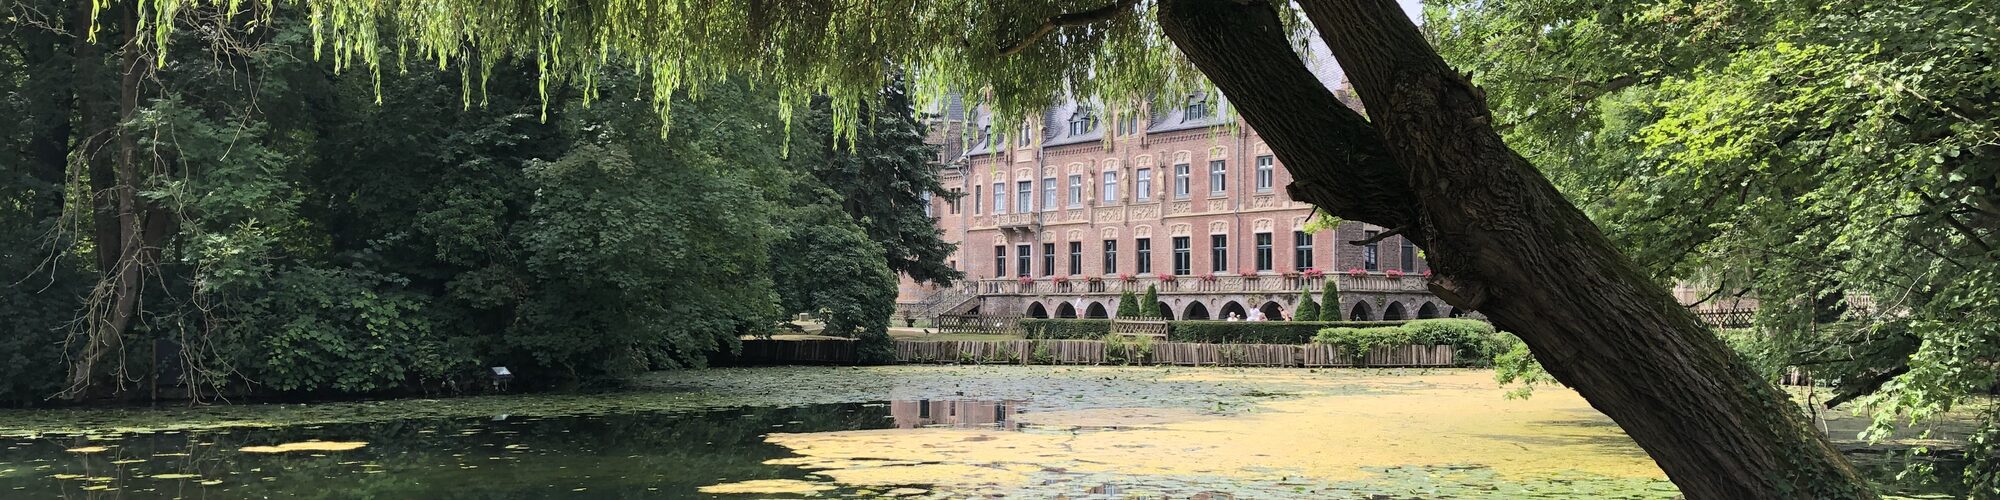 Blick über eine Bank, einen Teich und viel Grün, darunter eine Trauerweide, auf Schloss Paffendorf